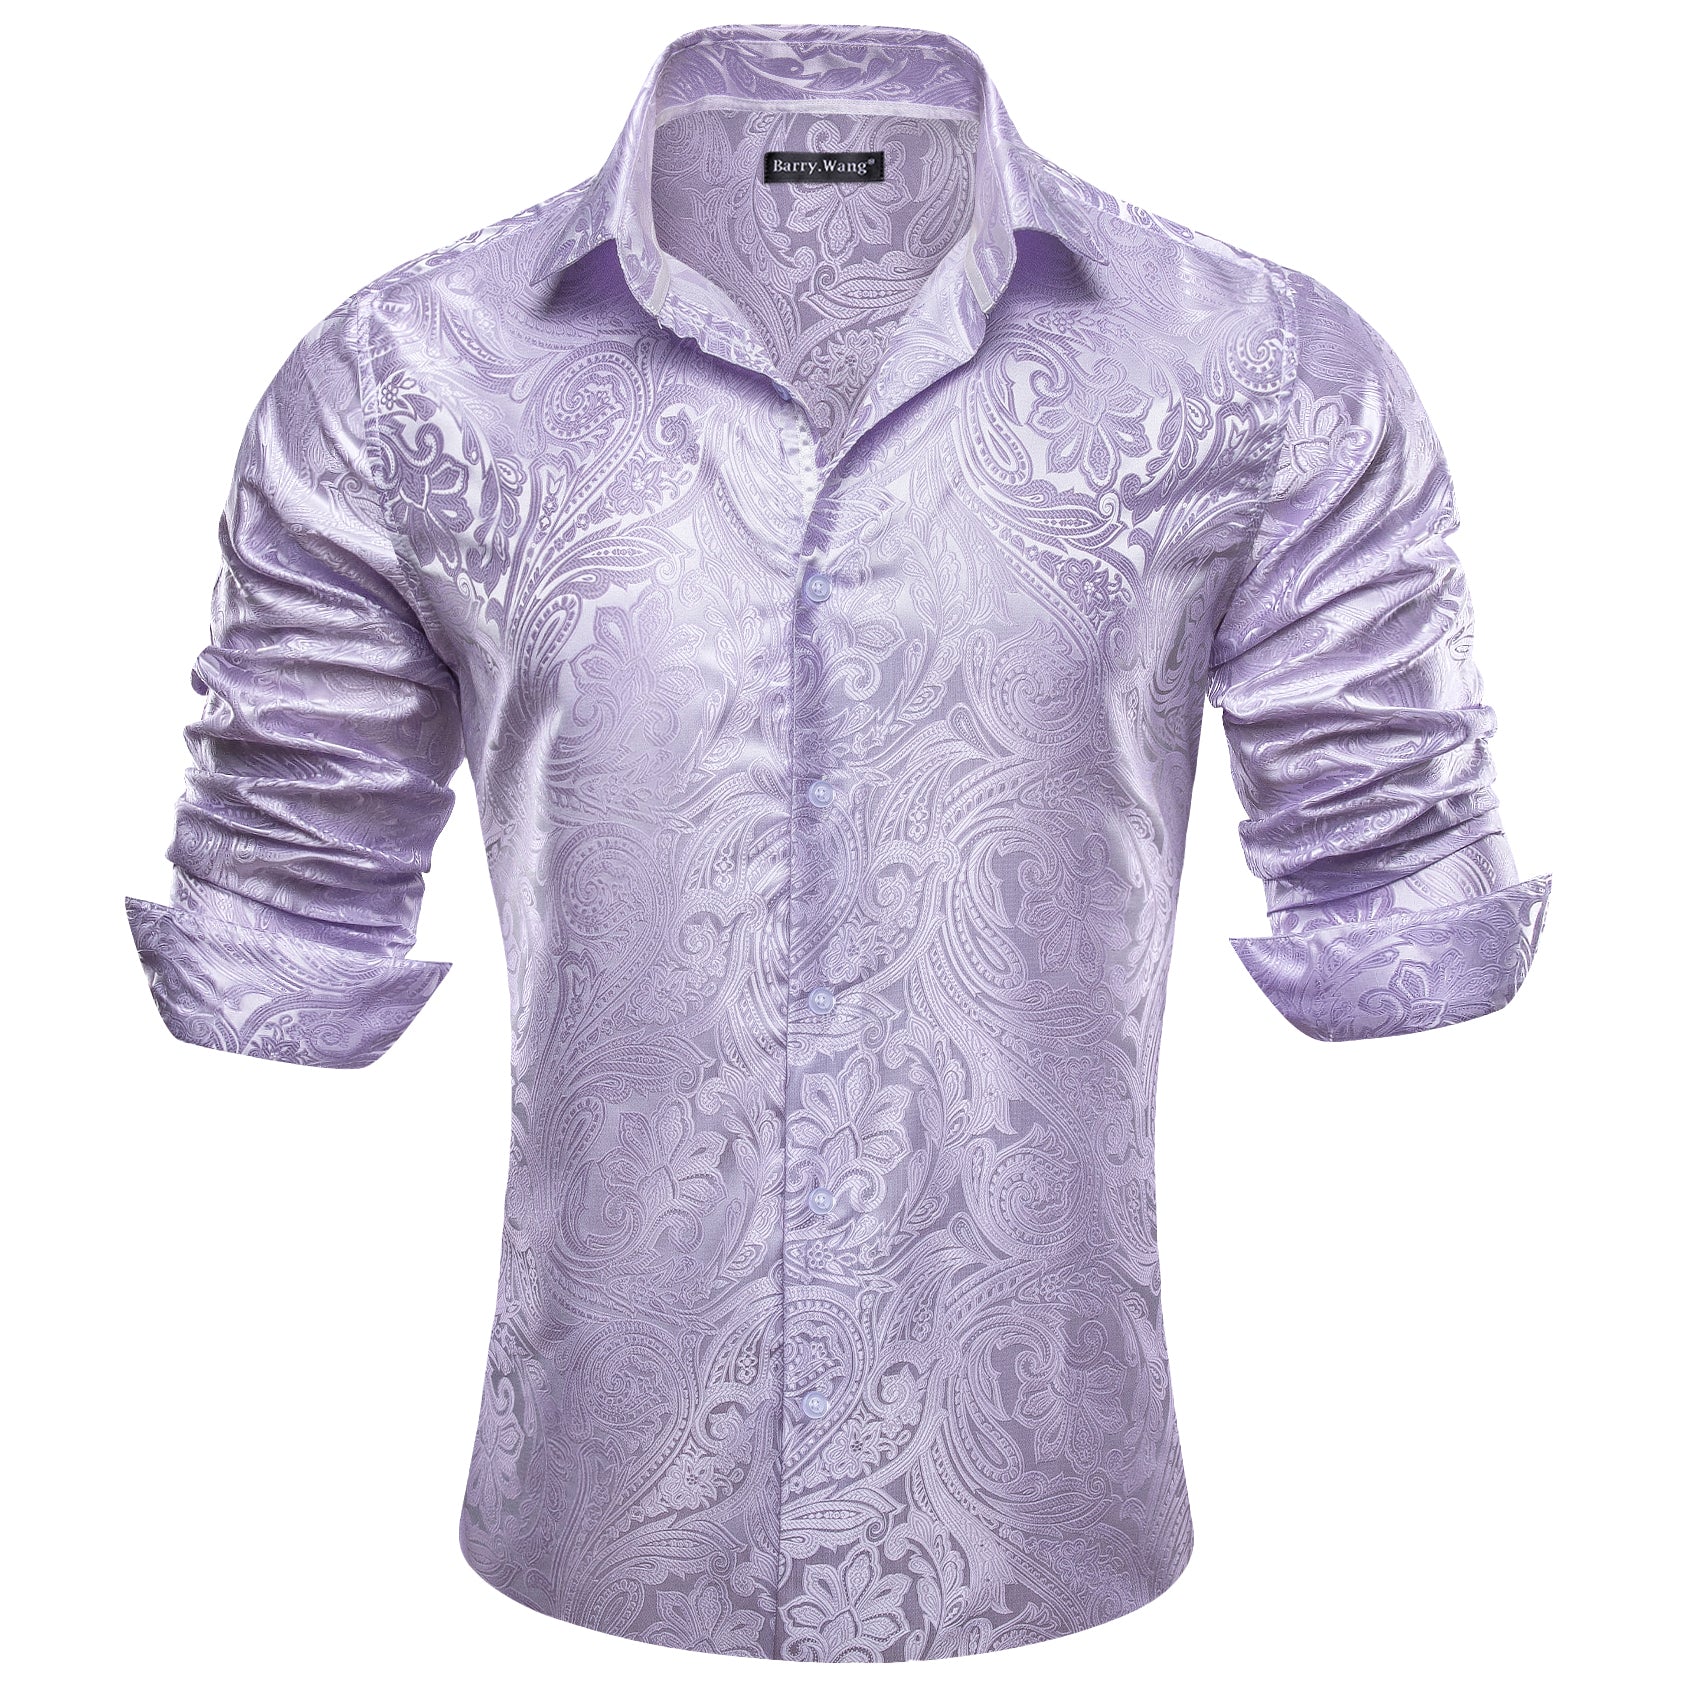 Barry.wang Button Down Shirt Men's Light Purple Paisley Silk Shirt